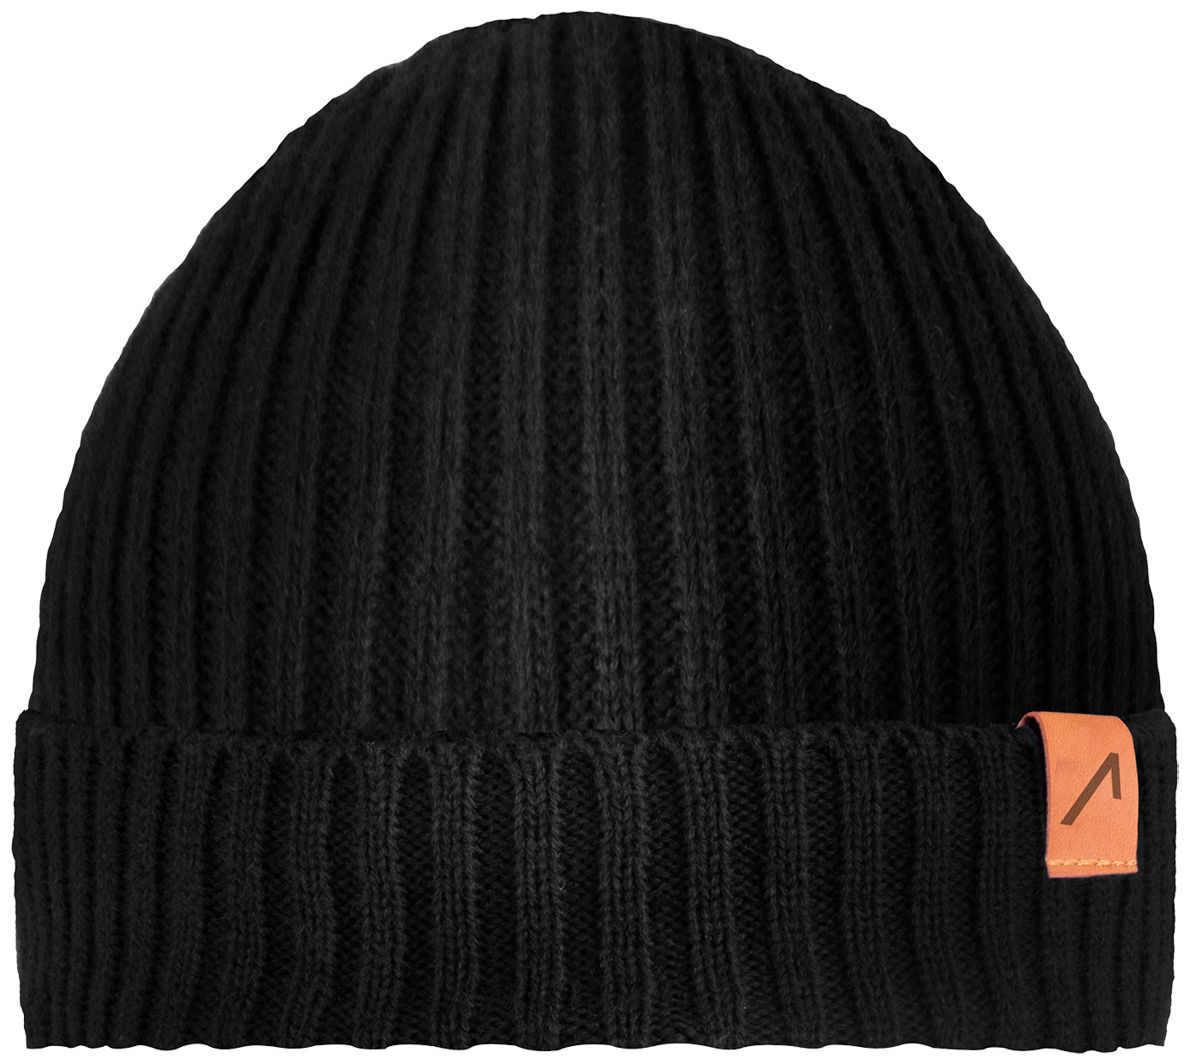 ACE Winter-Mütze - Strick-Mütze aus Schaf-Wolle für Erwachsene - Woll-Beanie für Damen & Herren